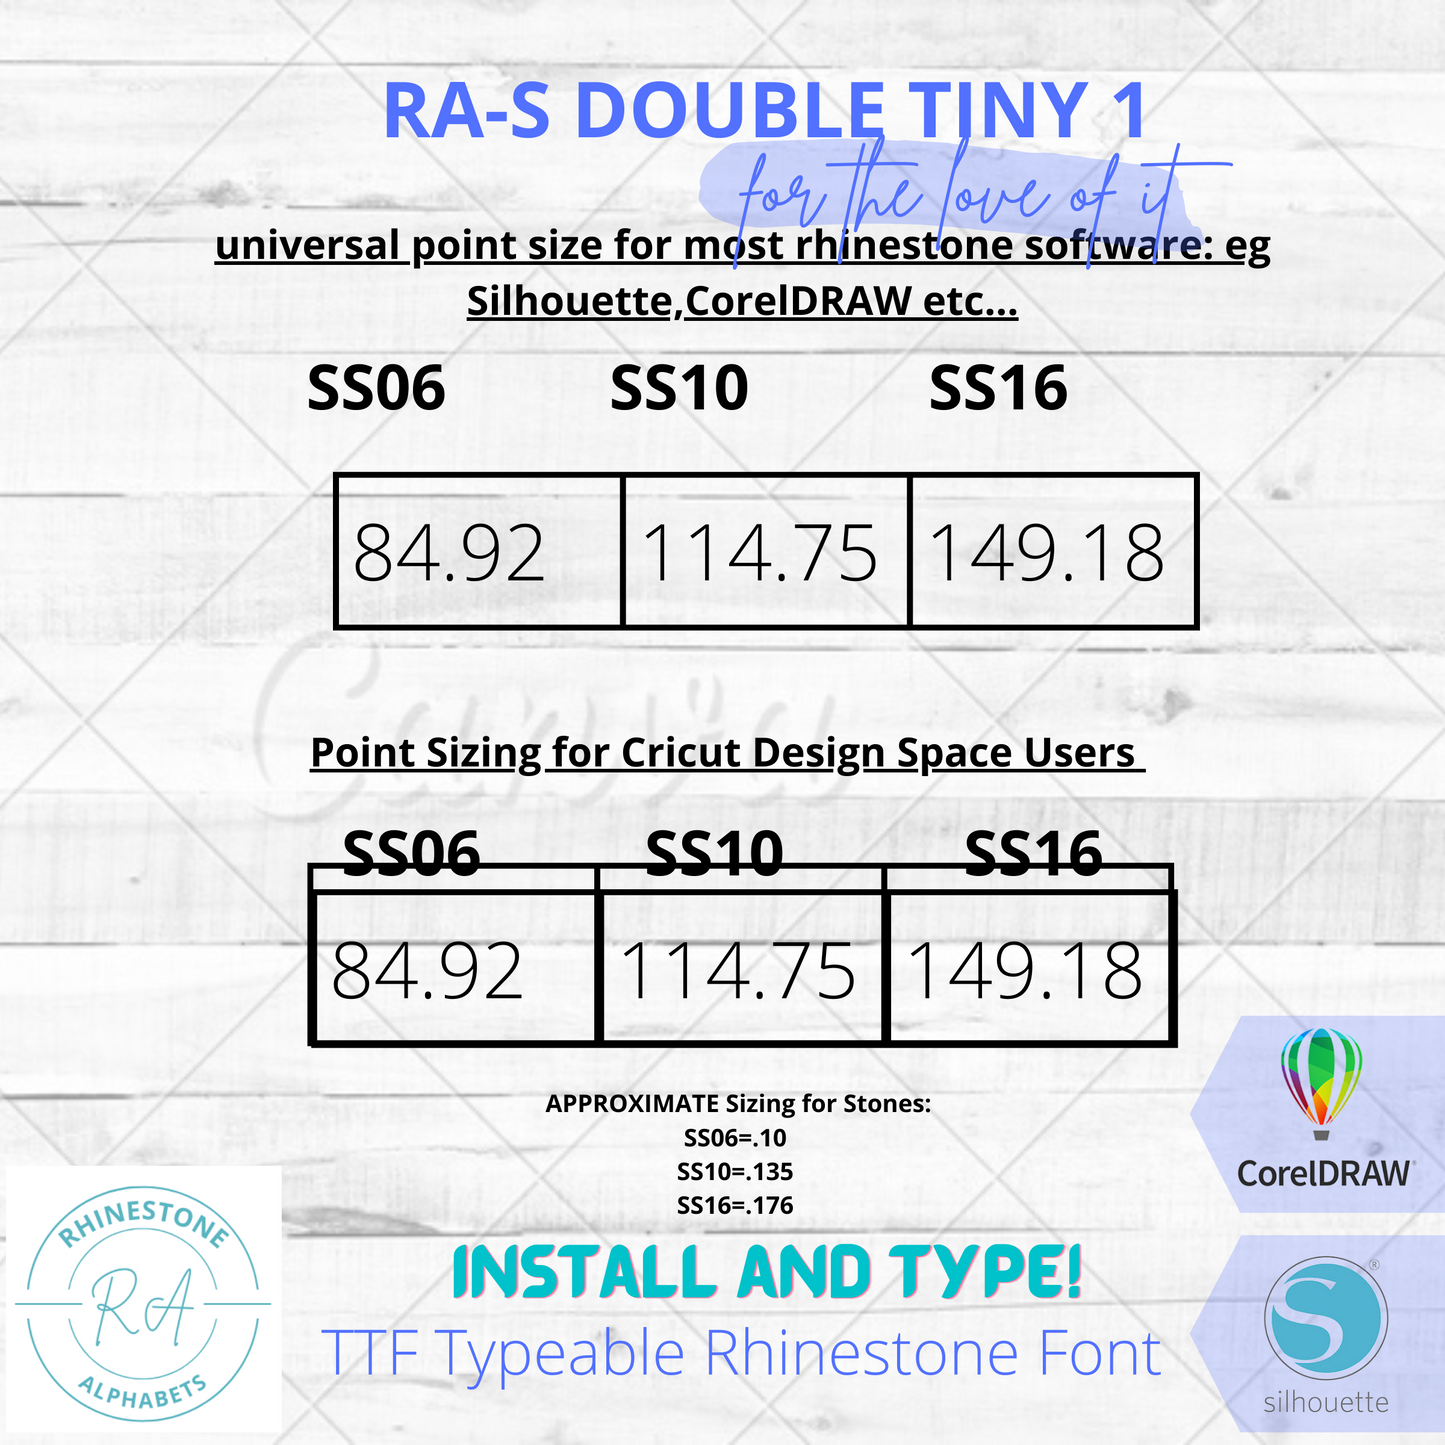 RA-S Double Tiny 1